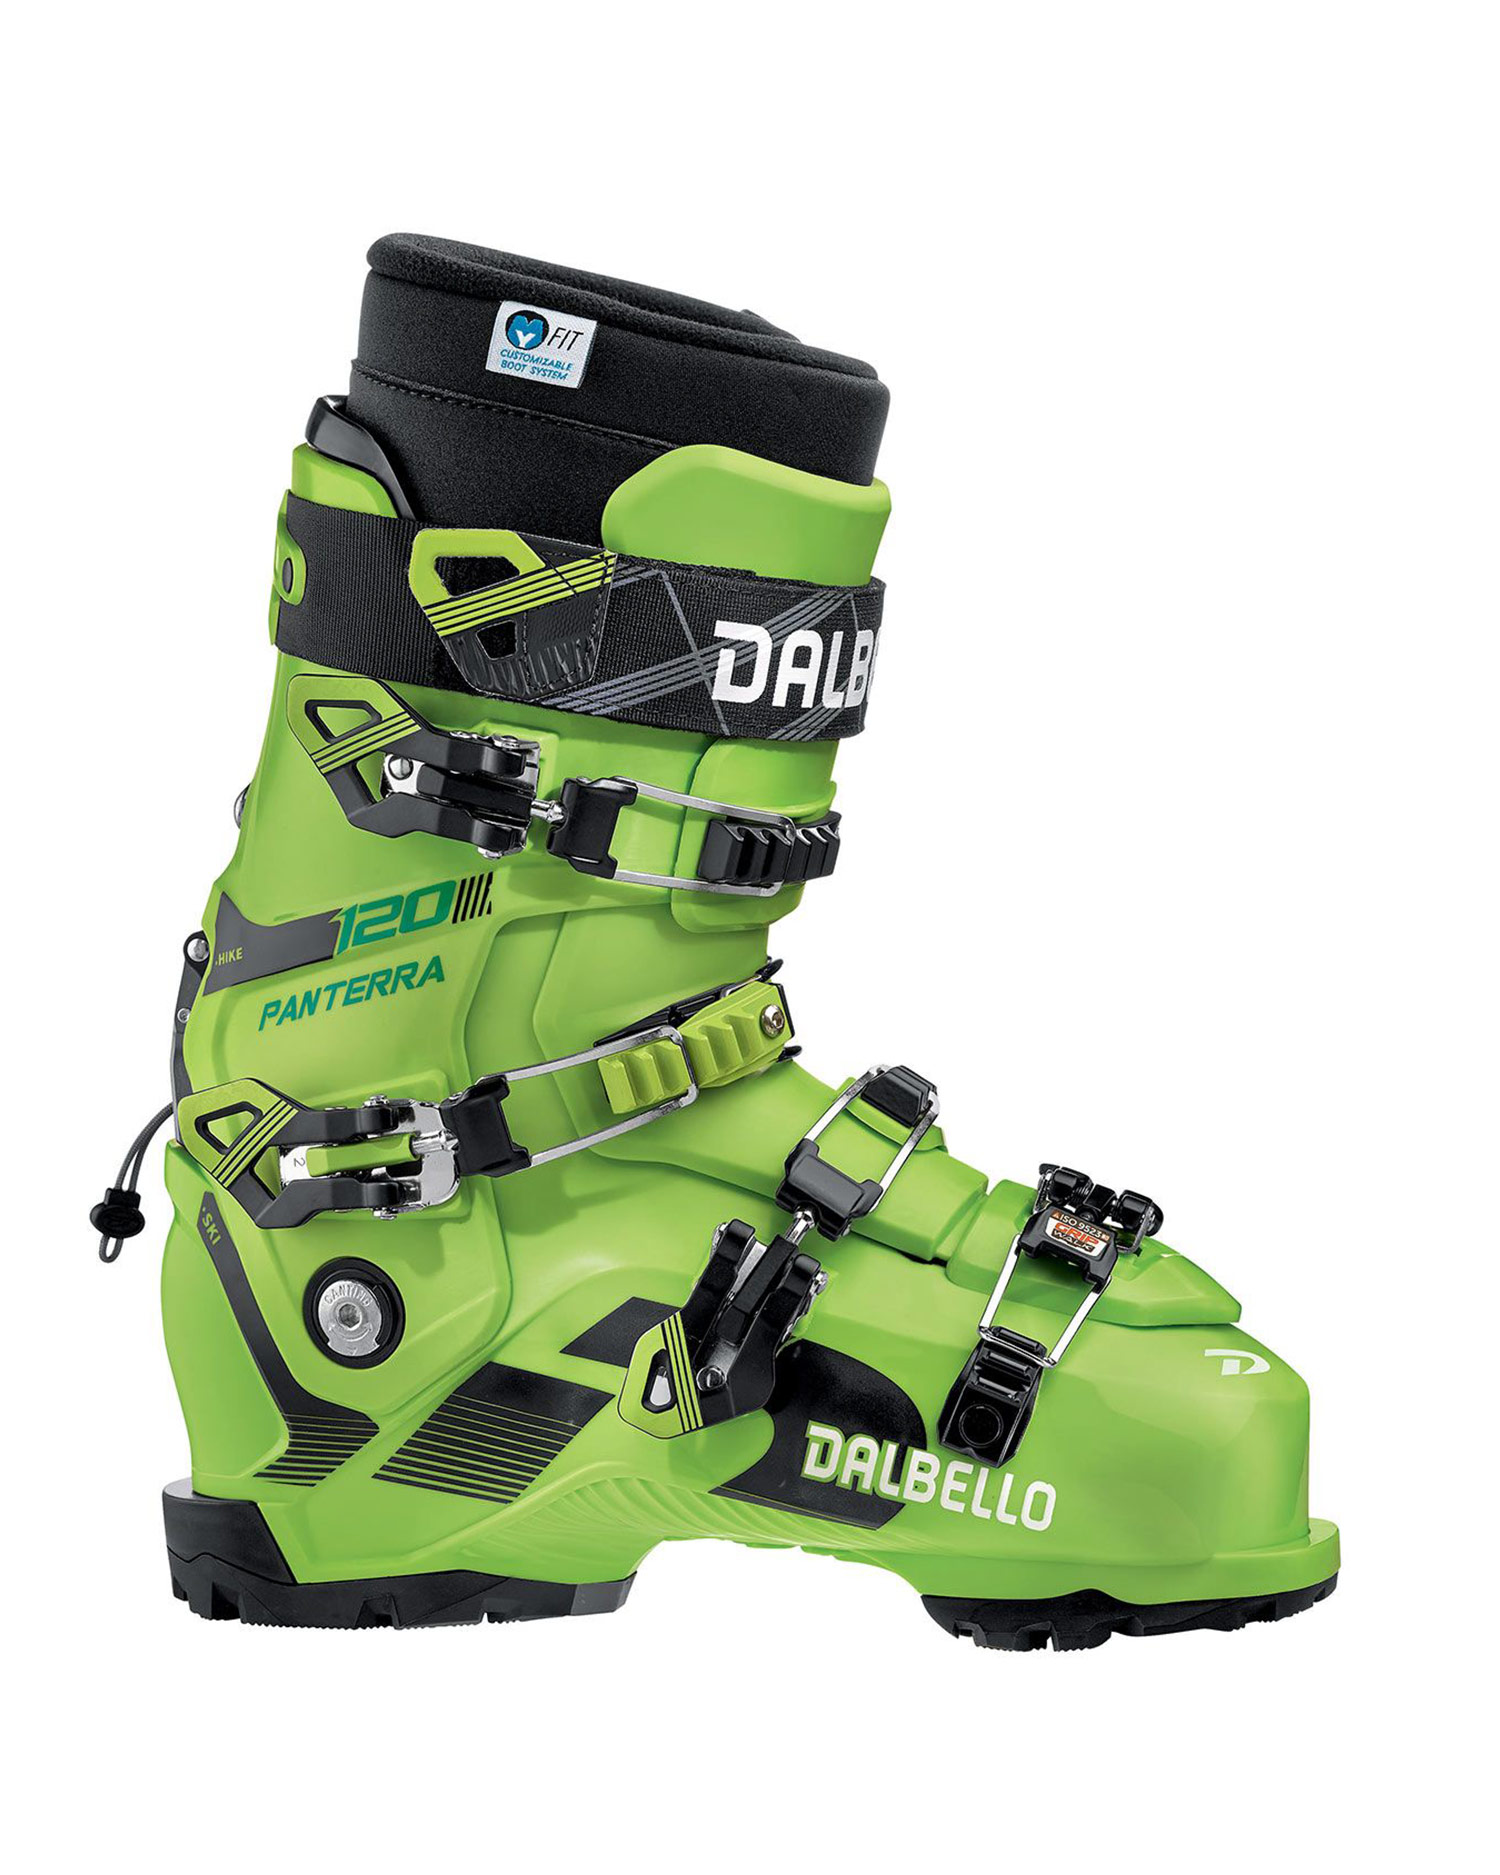 Chaussures de ski DALBELLO PANTERRA 120 I.D. GW MEN D1906002.10-n-d |  S'portofino